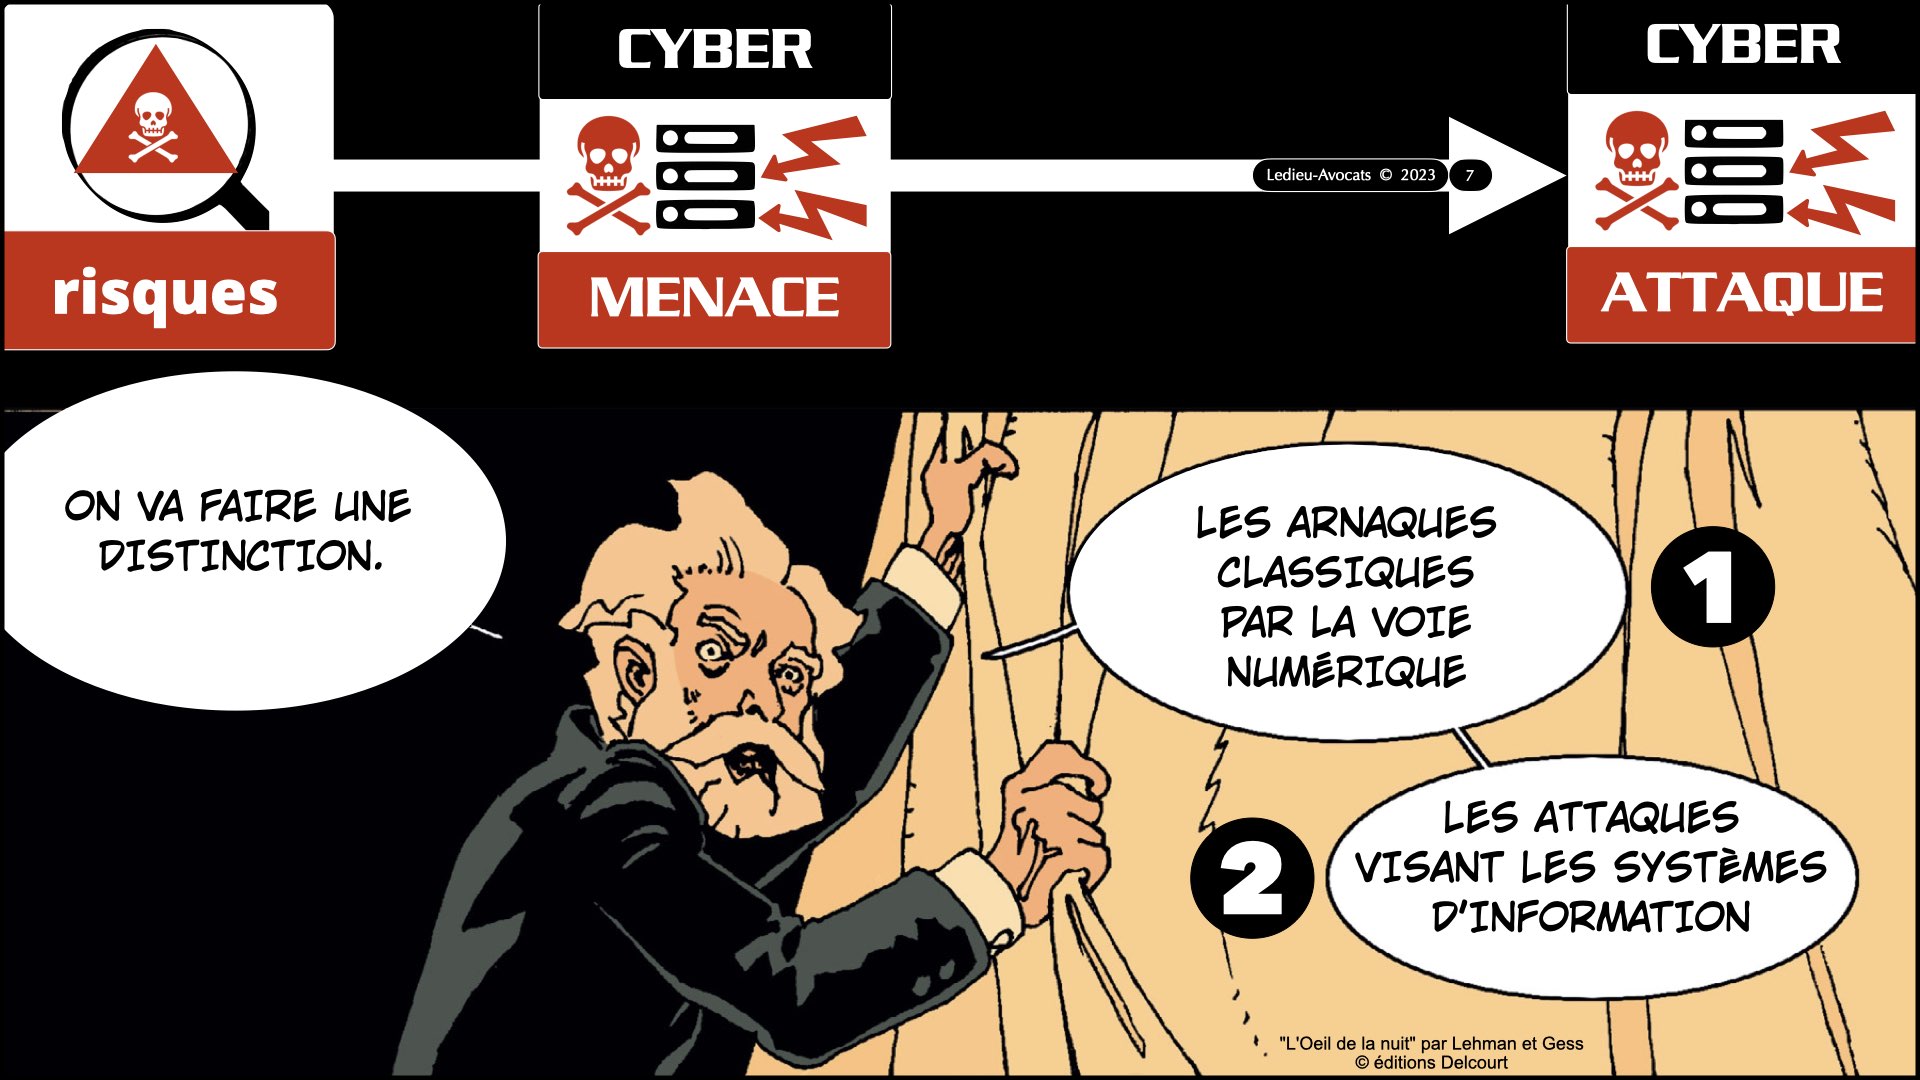 #522 la menace cyber expliquée aux Experts-Comptables ECF Ile de France 30 novembre 2023 © Ledieu-Avocats 2023.007